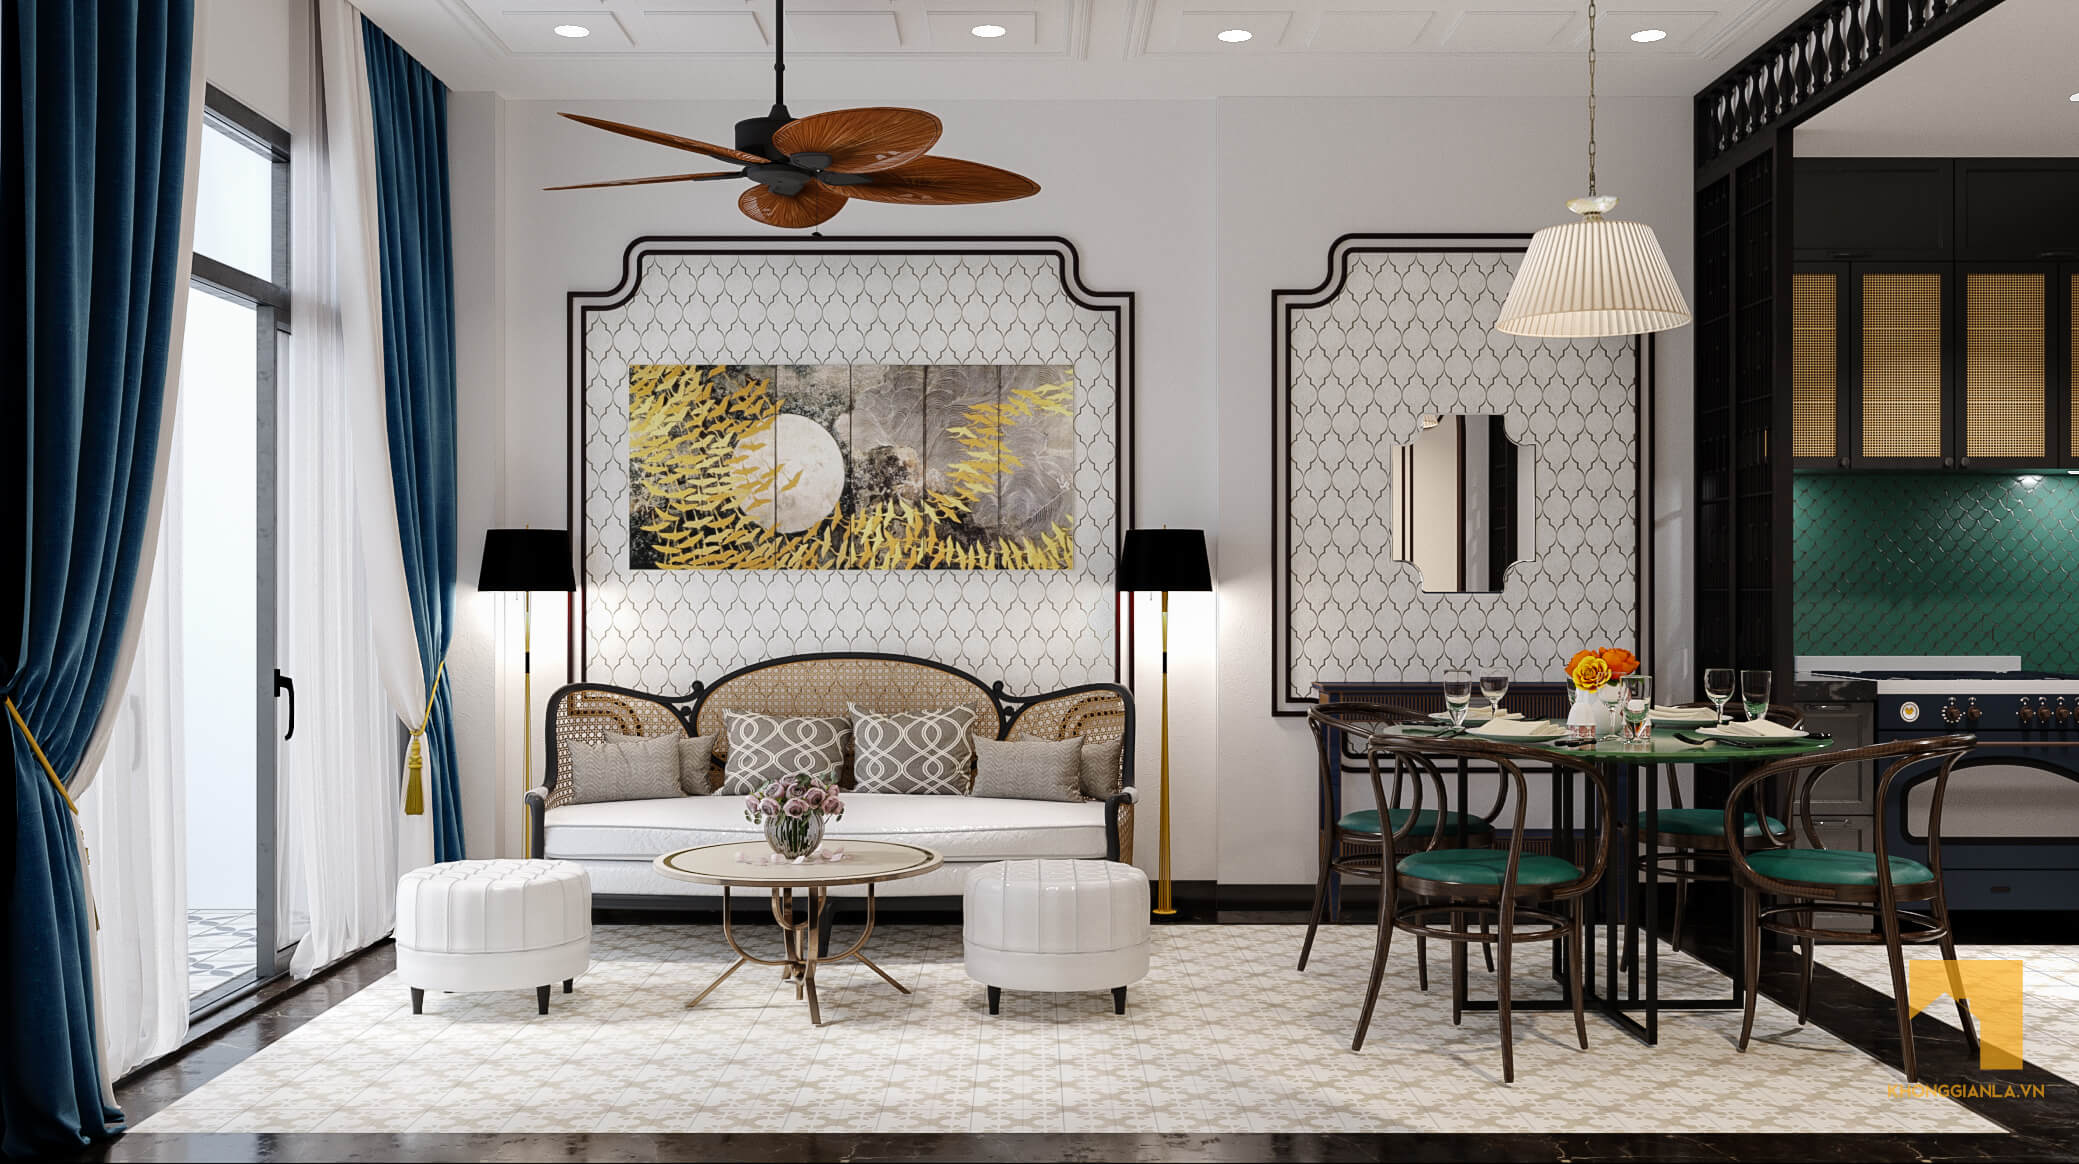 Top 5 thiết kế nội thất chung cư đẹp tháng 10 (P3) - Phong cách Indochine